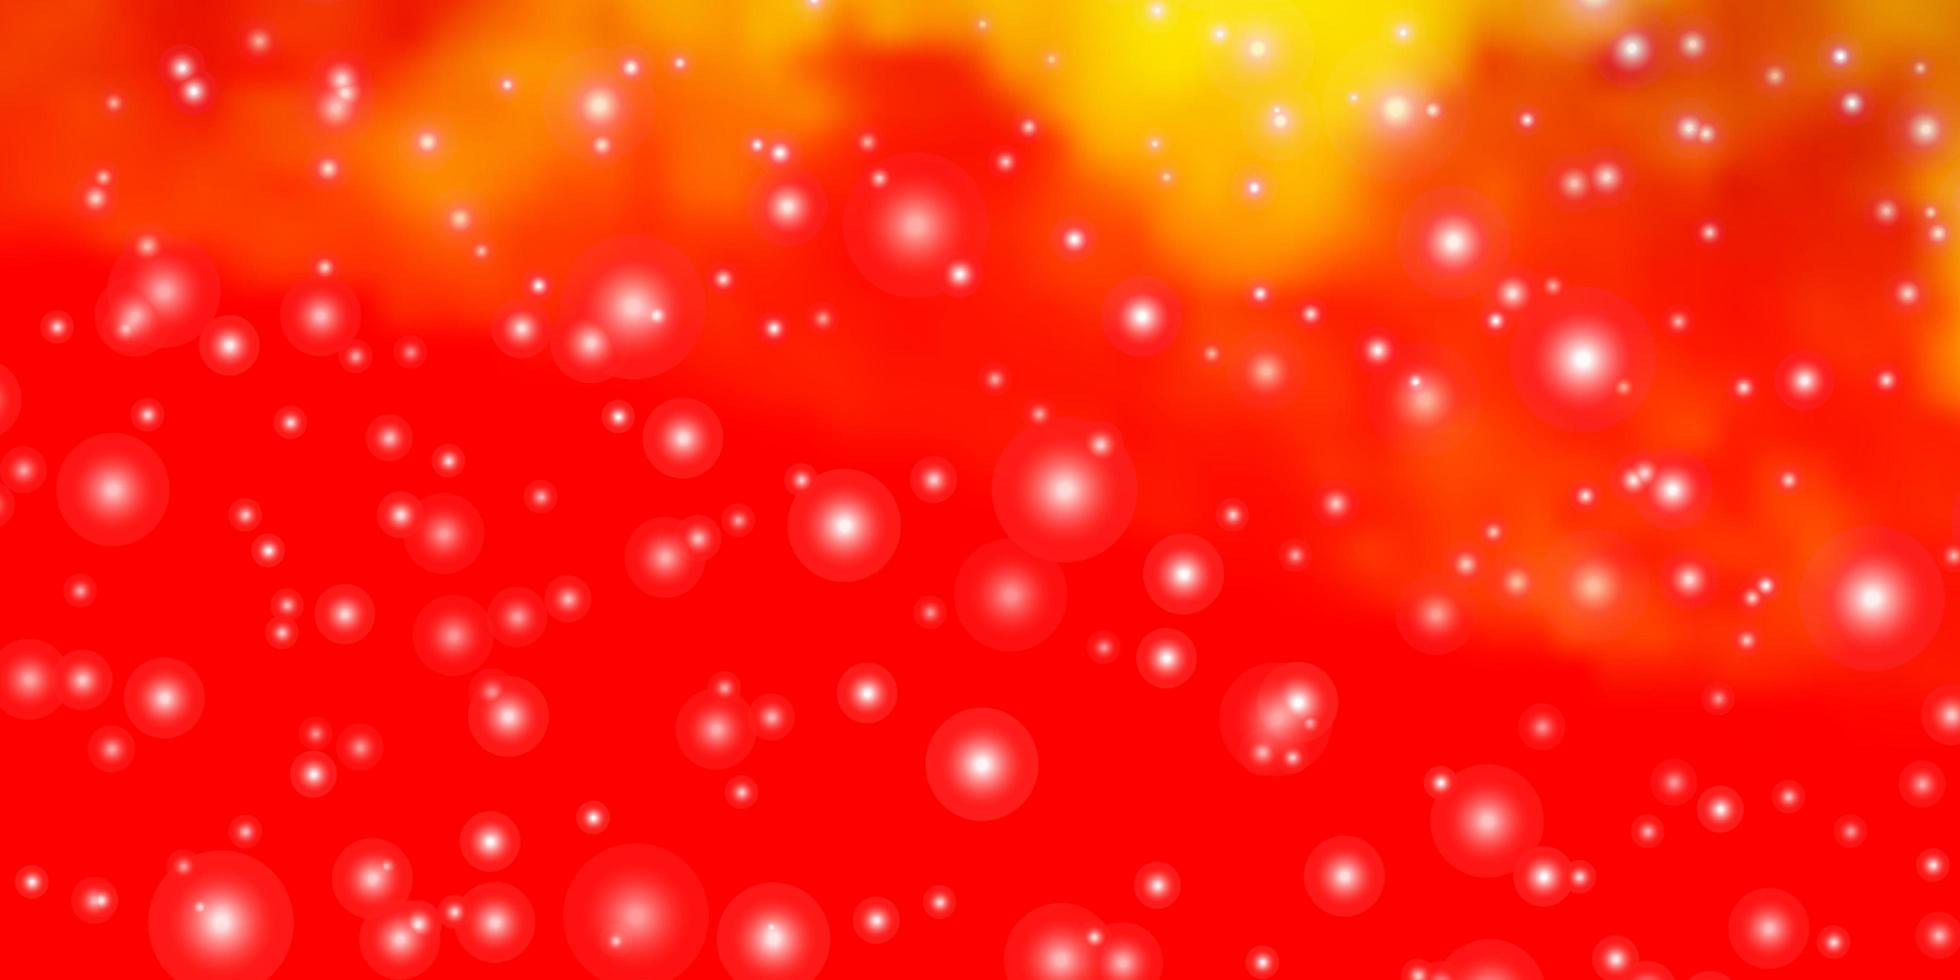 ljus orange vektor bakgrund med färgglada stjärnor.